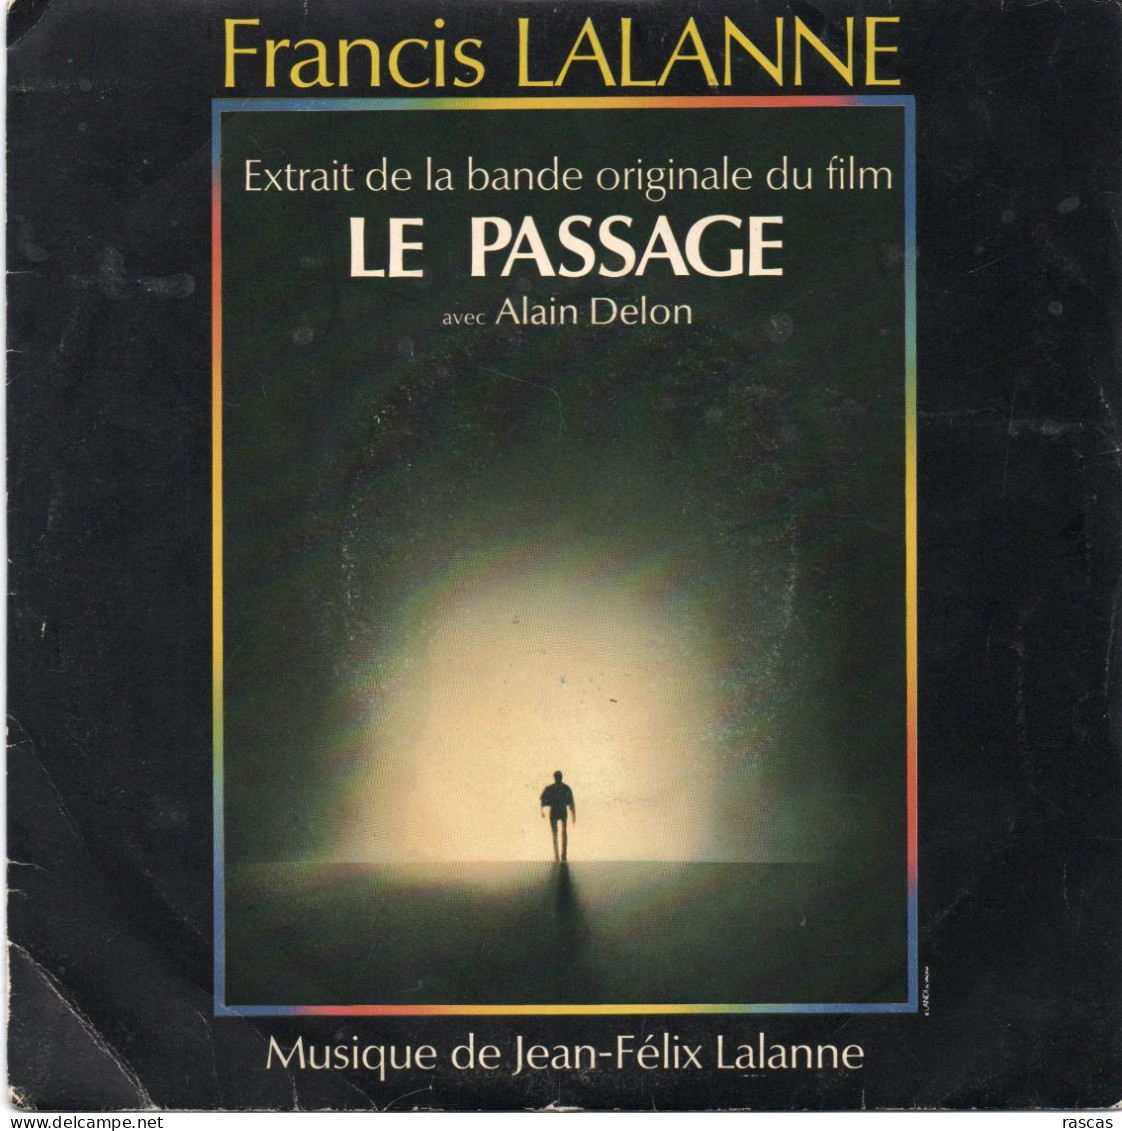 DISQUE VINYL 45 T DU CHANTEUR FRANCAIS FRANCIS LALANNE - LE PASSAGE - EXTRAIT DE LA BANDE ORIGINALE DU FILM - Música De Peliculas